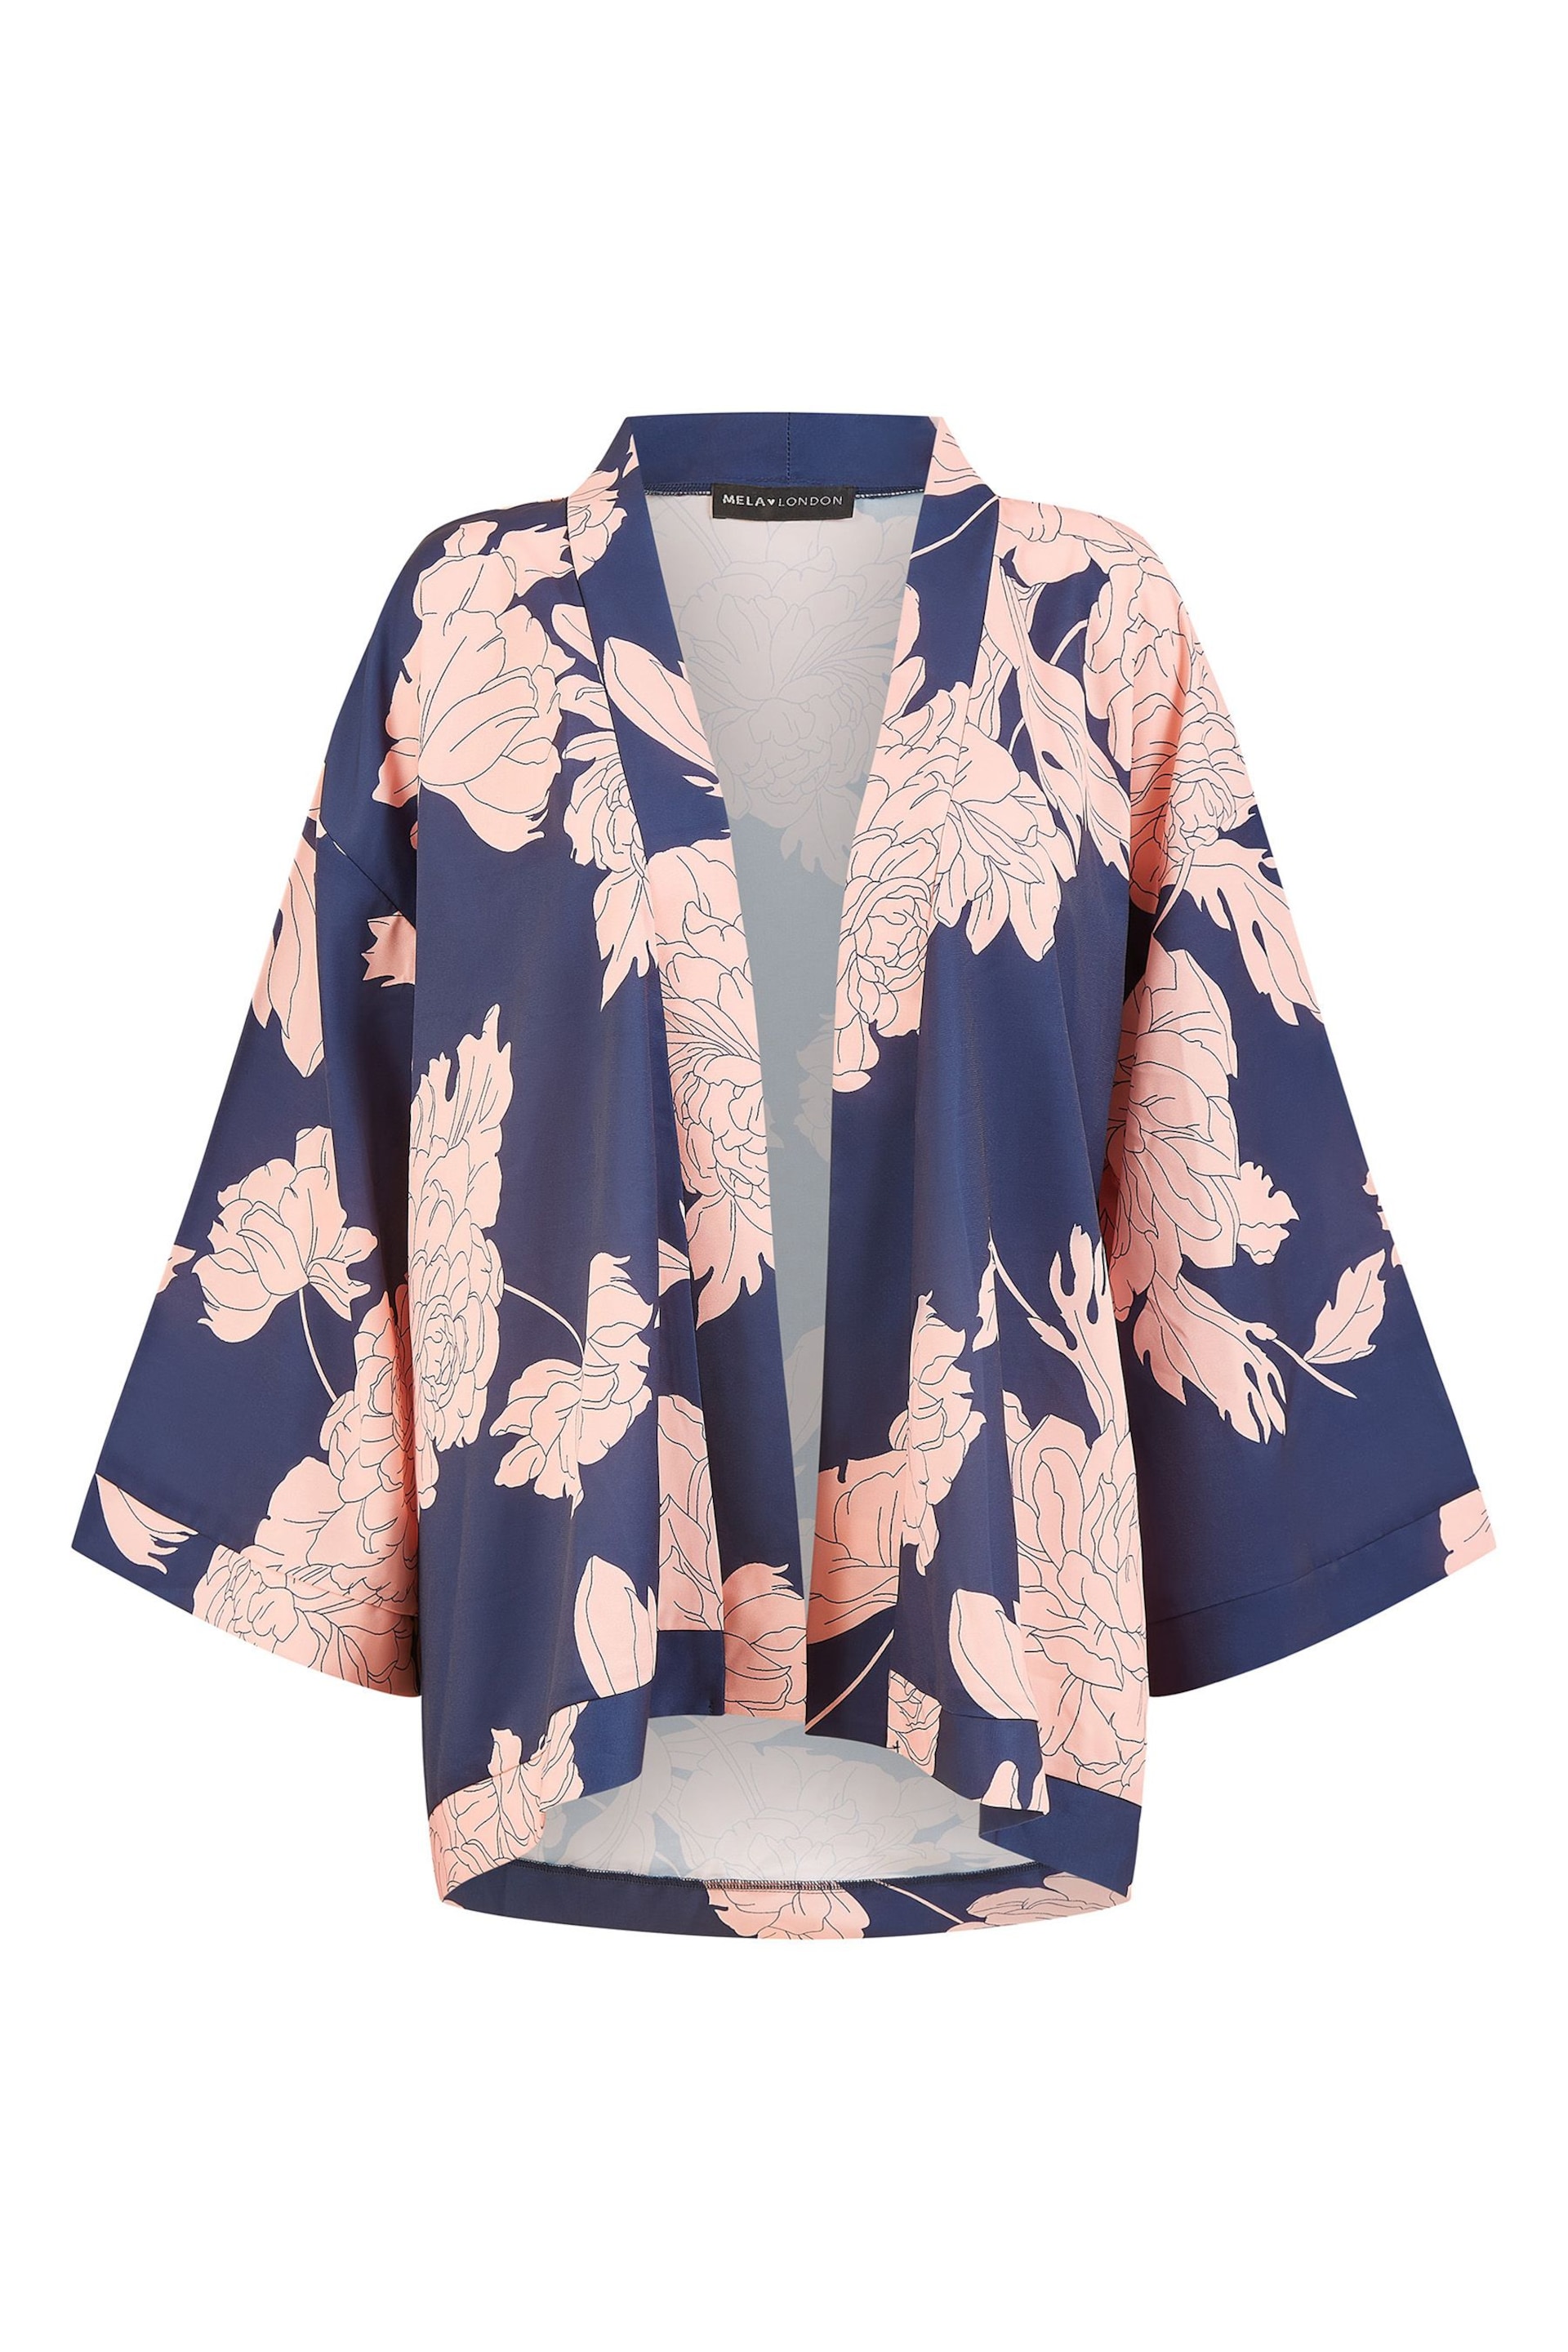 Mela Blue Curve Blossom Print Kimono - Image 4 of 4